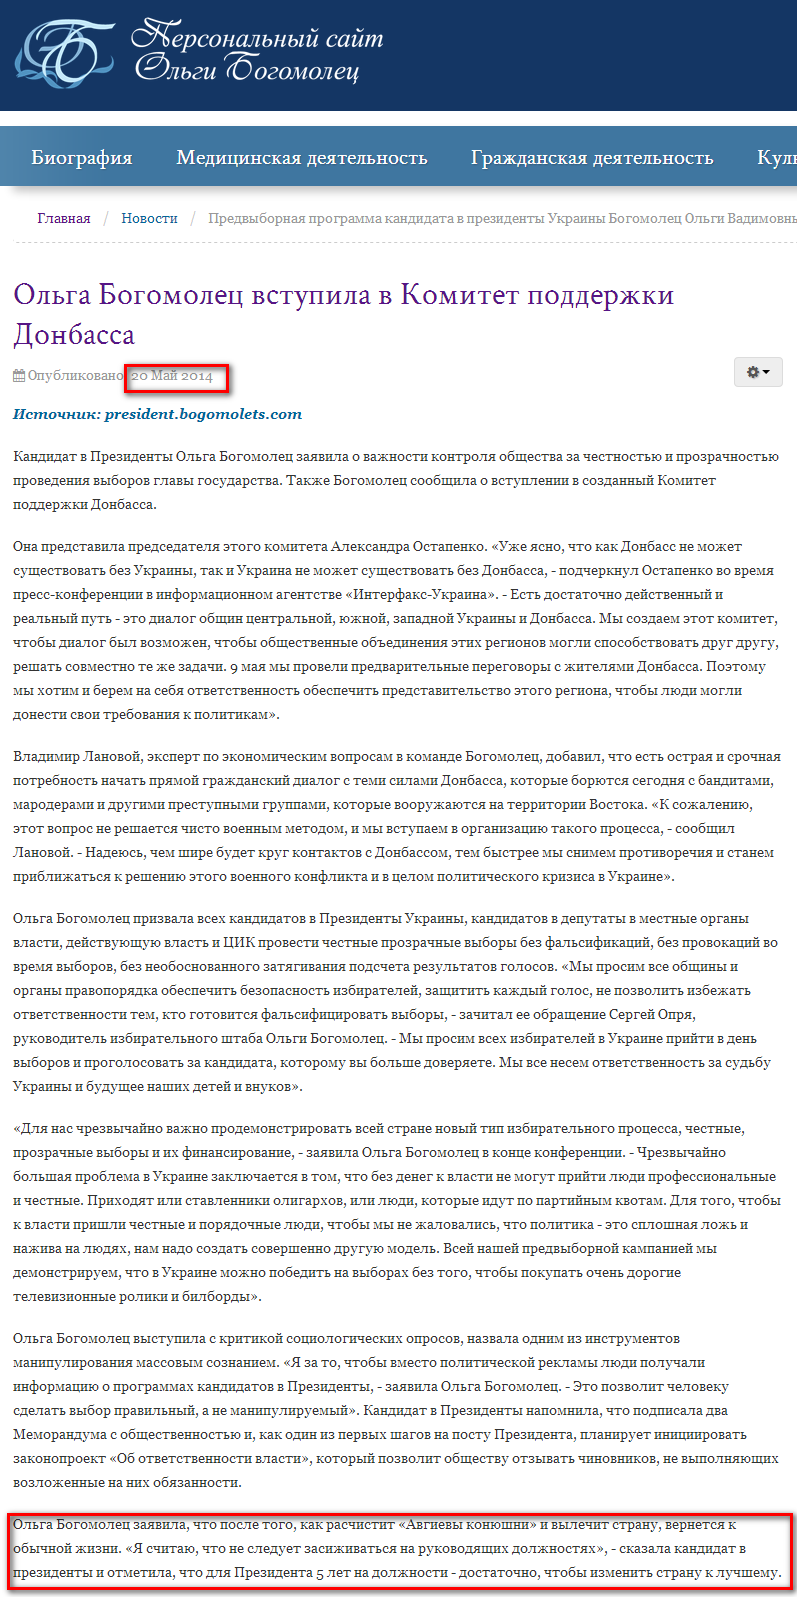 http://bogomolets.com/ru/news/467-olga-bogomolets-vstupila-v-komitet-podderzhki-donbassa